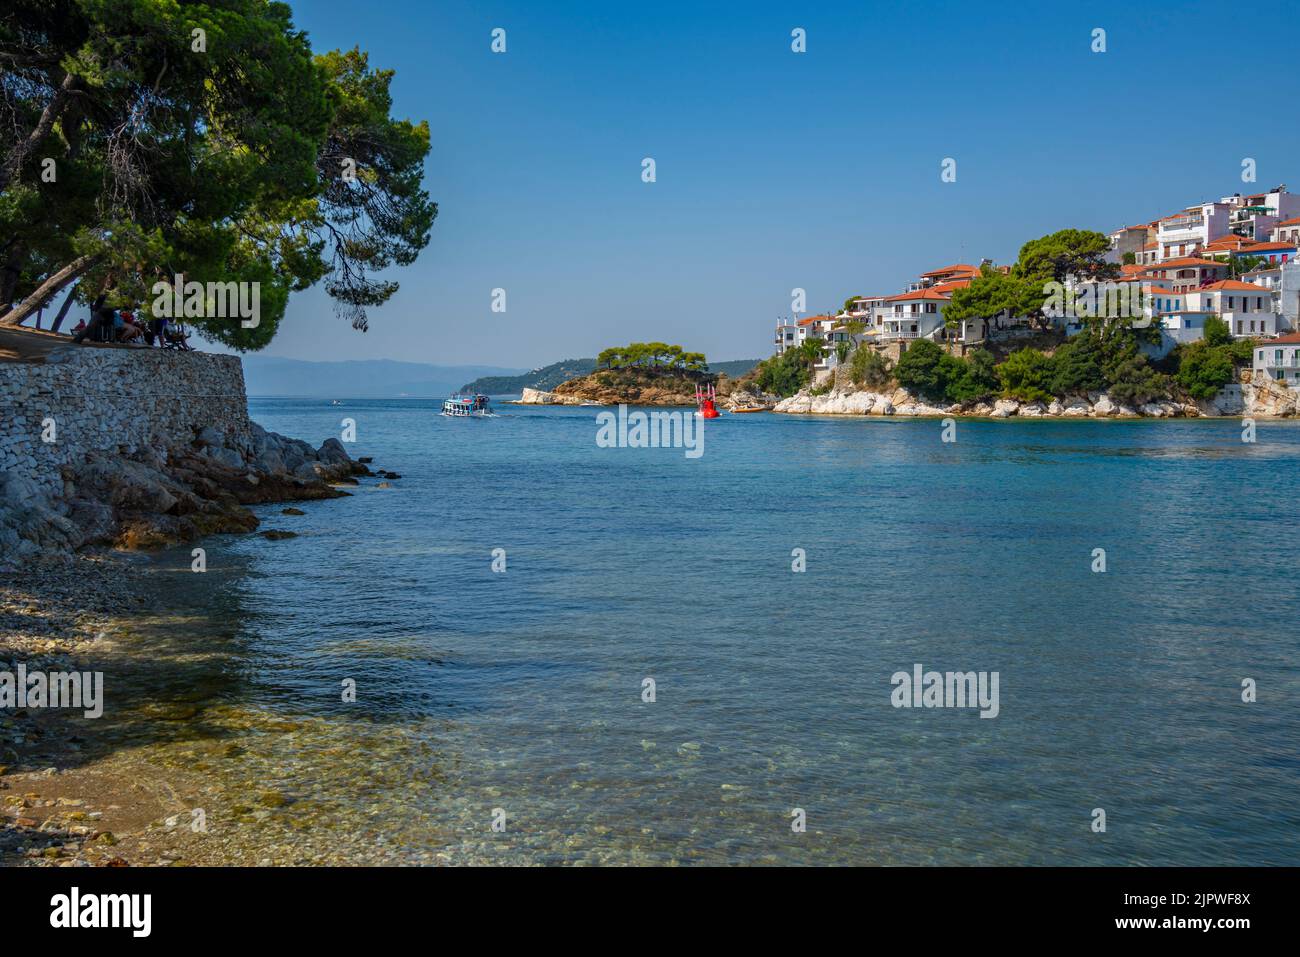 Blick auf Belvedere Skiathos Alter Hafen und Skiathos Stadt, Skiathos Insel, Sporaden Inseln, griechische Inseln, Griechenland, Europa Stockfoto